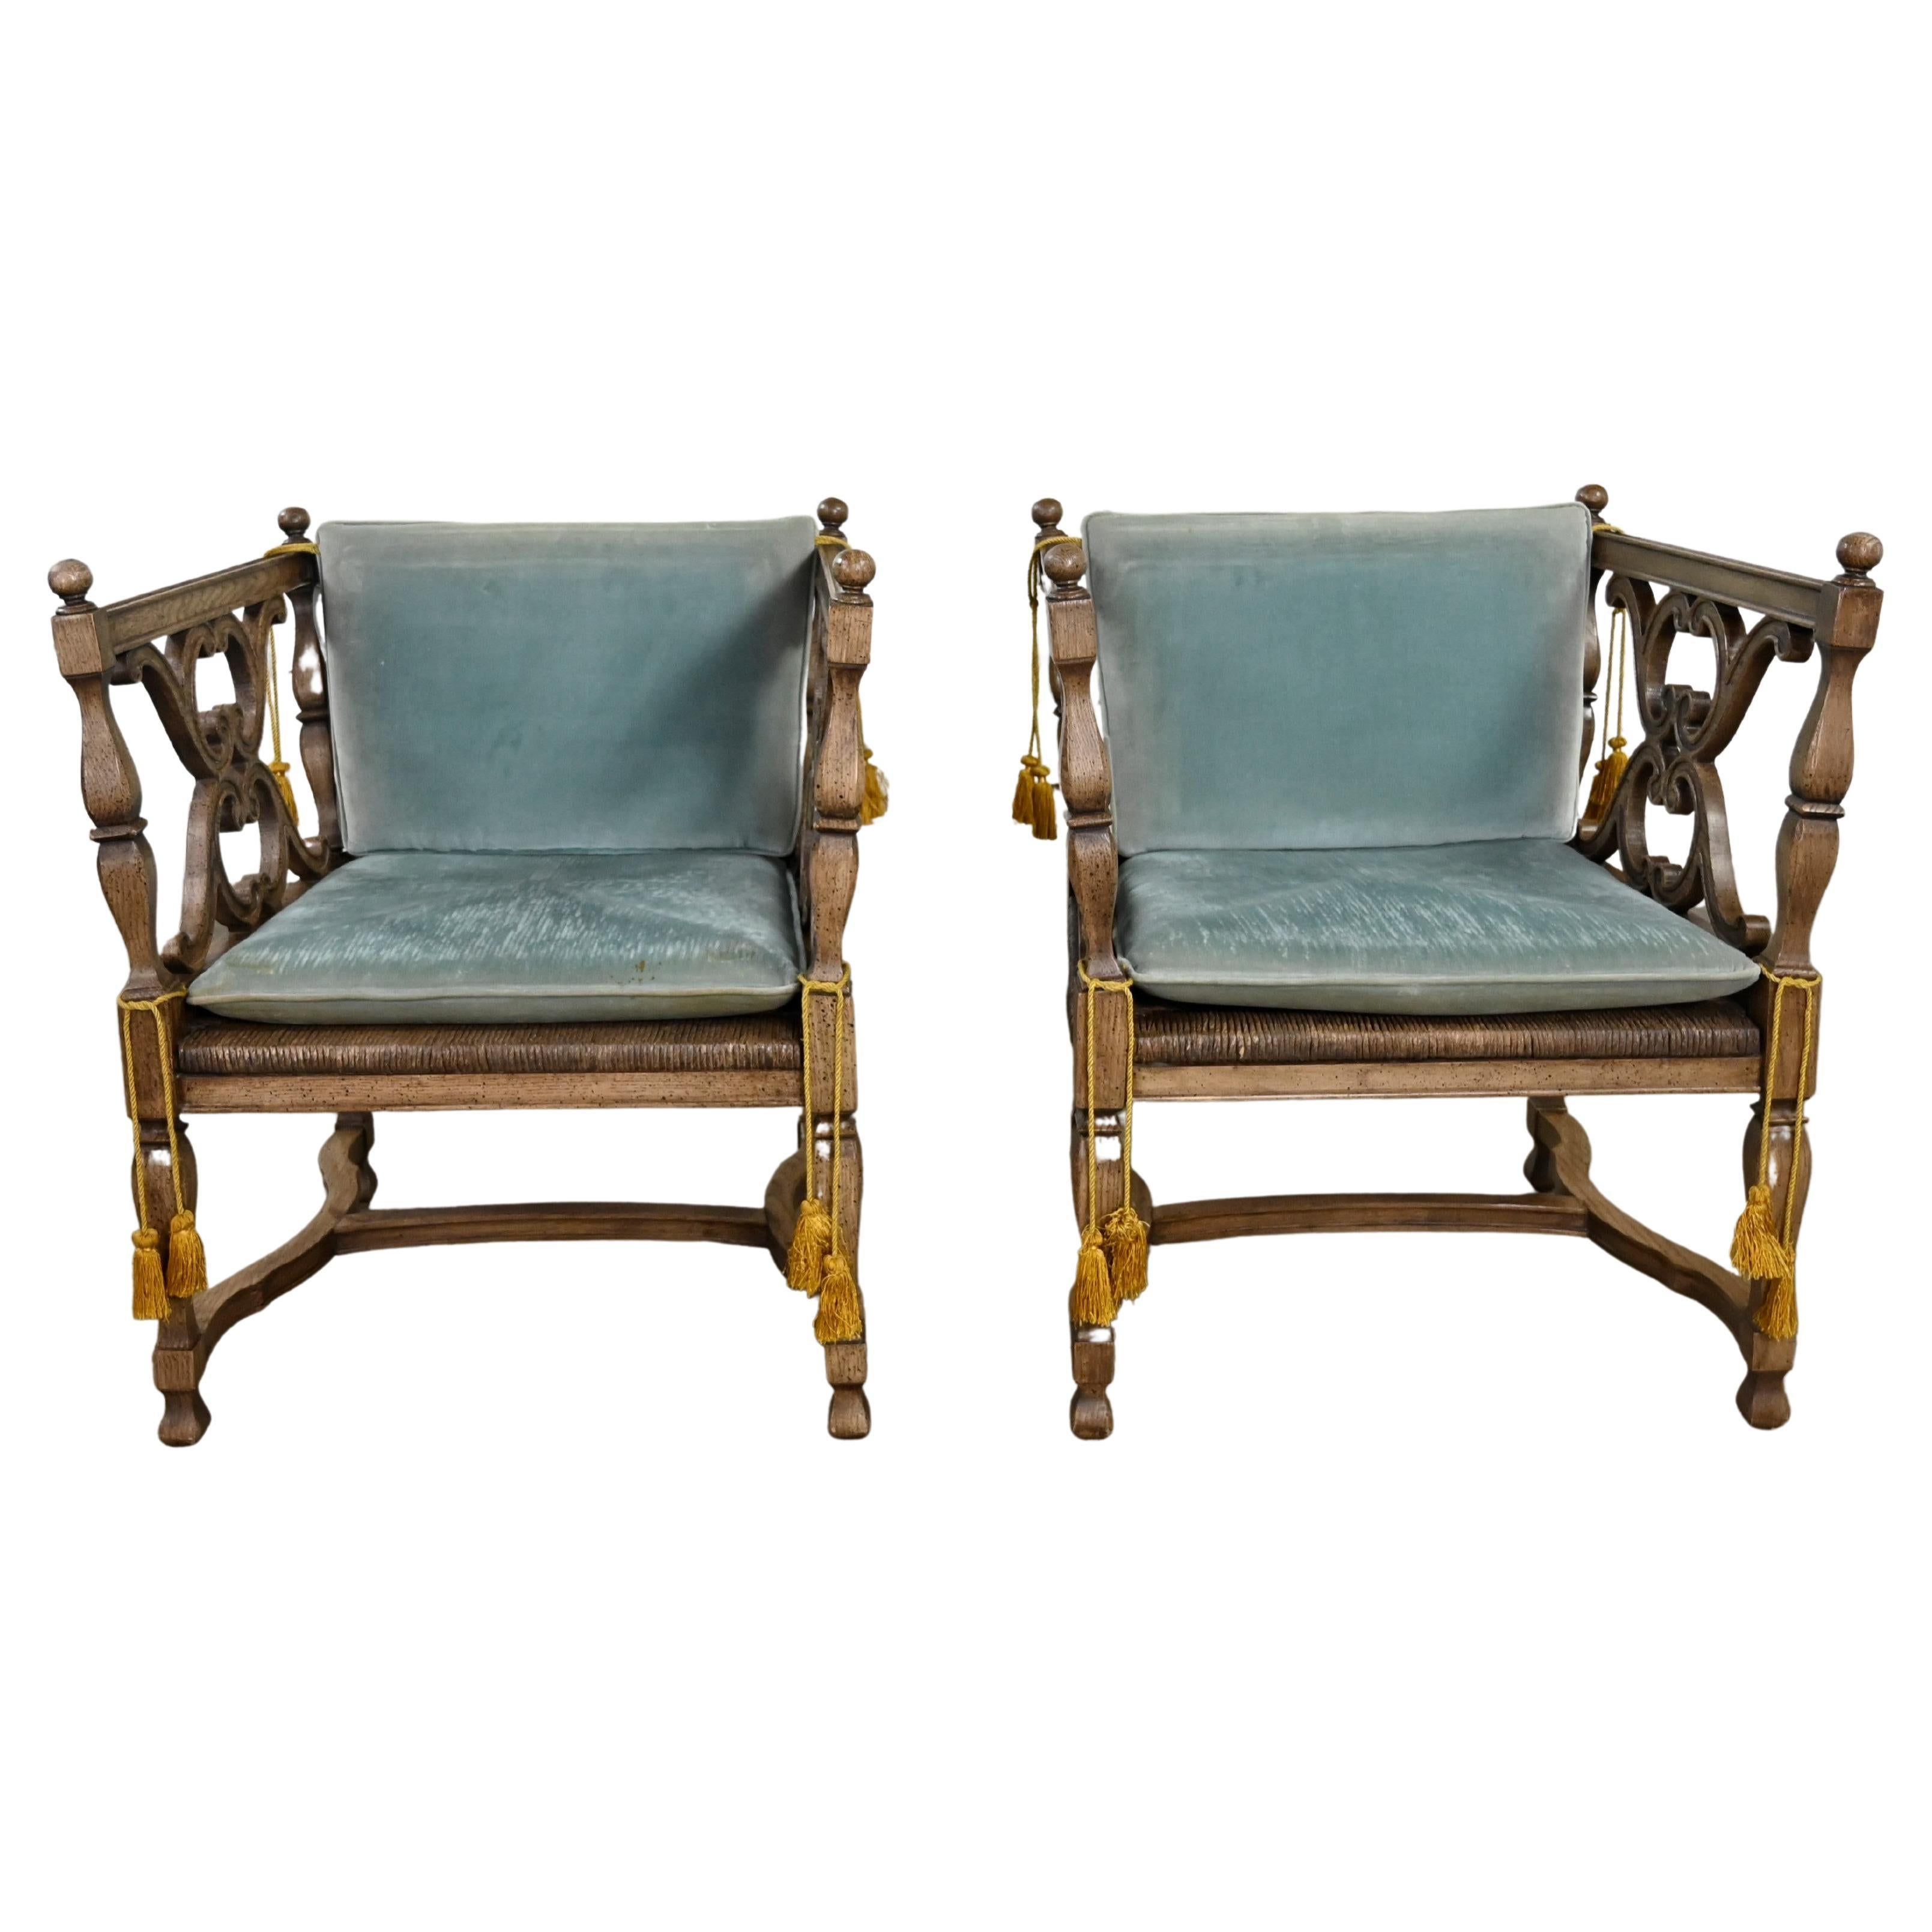 Paar Ceruse-Stühle im mediterranen spanischen Revival-Stil mit Binsensitz und blauen losen Kissen